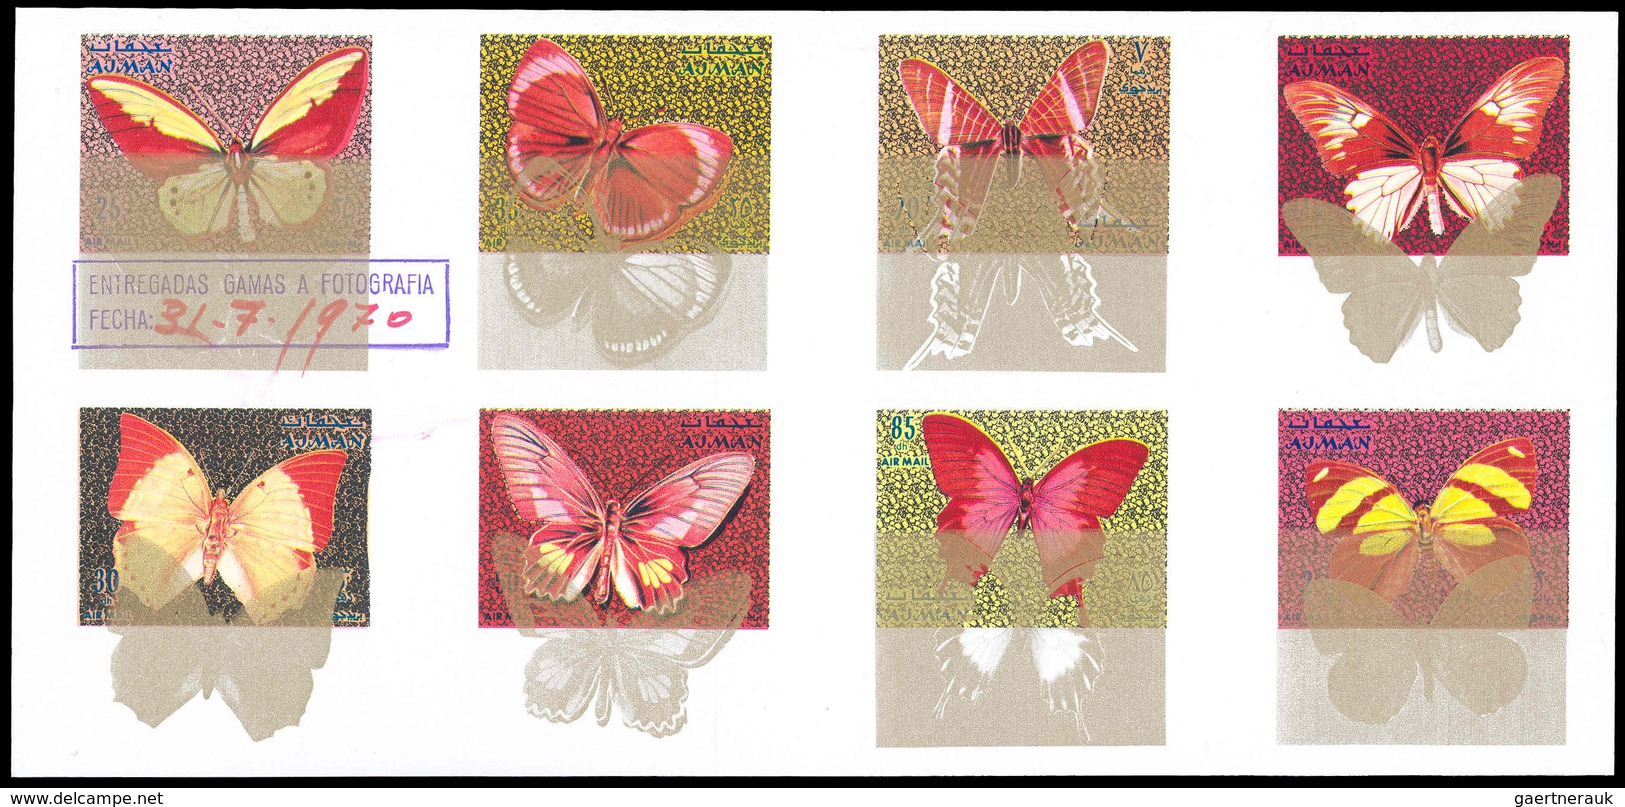 Thematik: Tiere-Schmetterlinge / Animals-butterflies: 1971, Adschman/Ajman: BUTTERFLIES - 9 Items; C - Butterflies